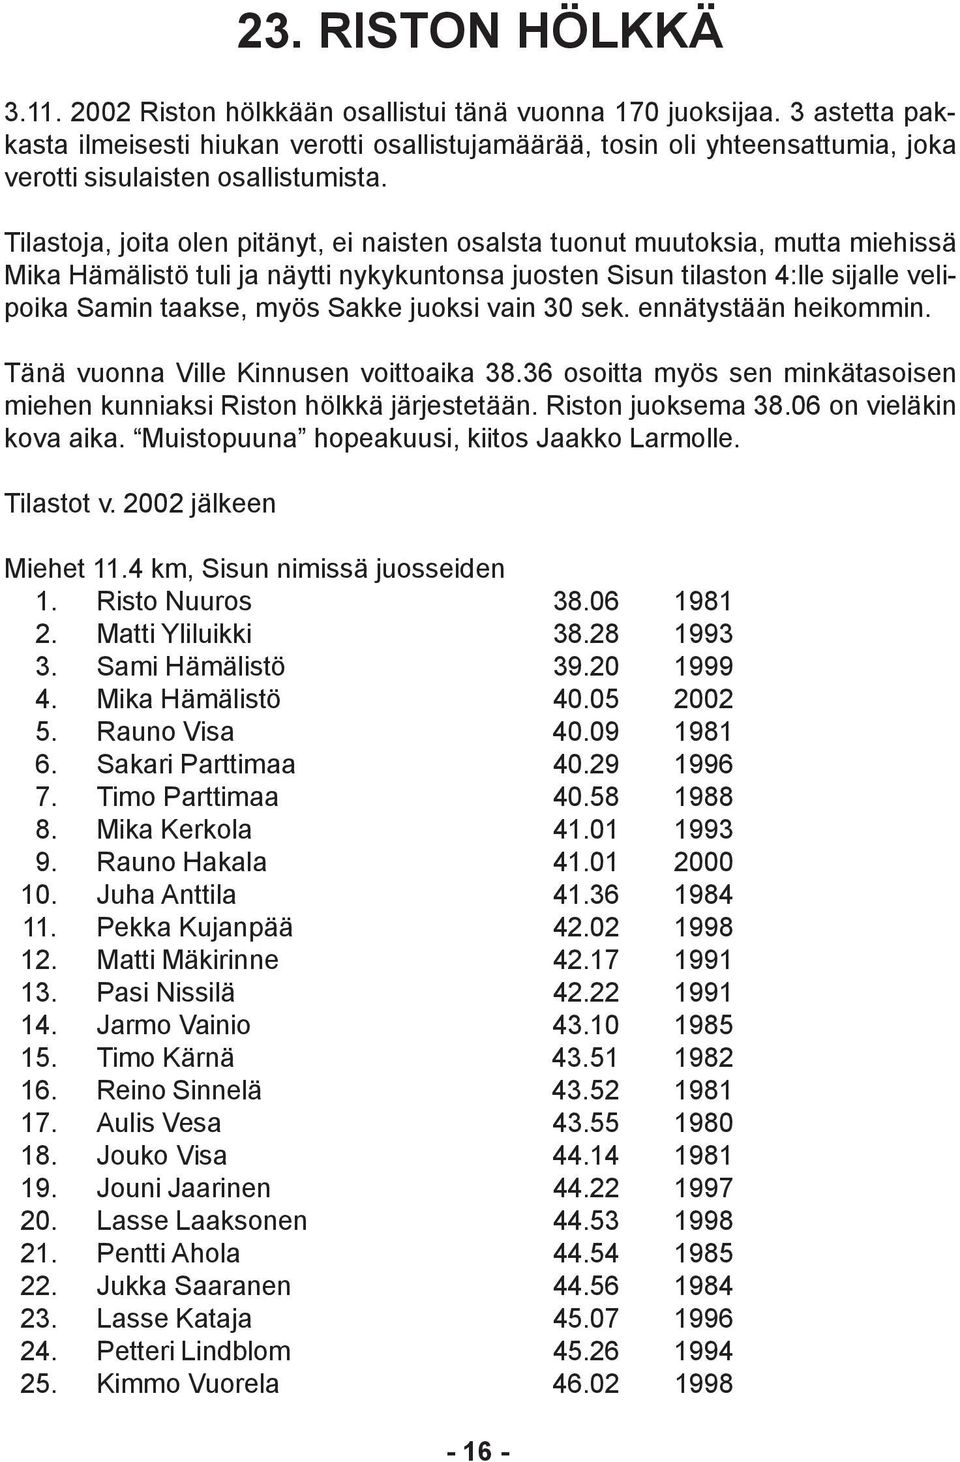 Tilastoja, joita olen pitänyt, ei naisten osalsta tuonut muutoksia, mutta miehissä Mika Hämälistö tuli ja näytti nykykuntonsa juosten Sisun tilaston 4:lle sijalle velipoika Samin taakse, myös Sakke